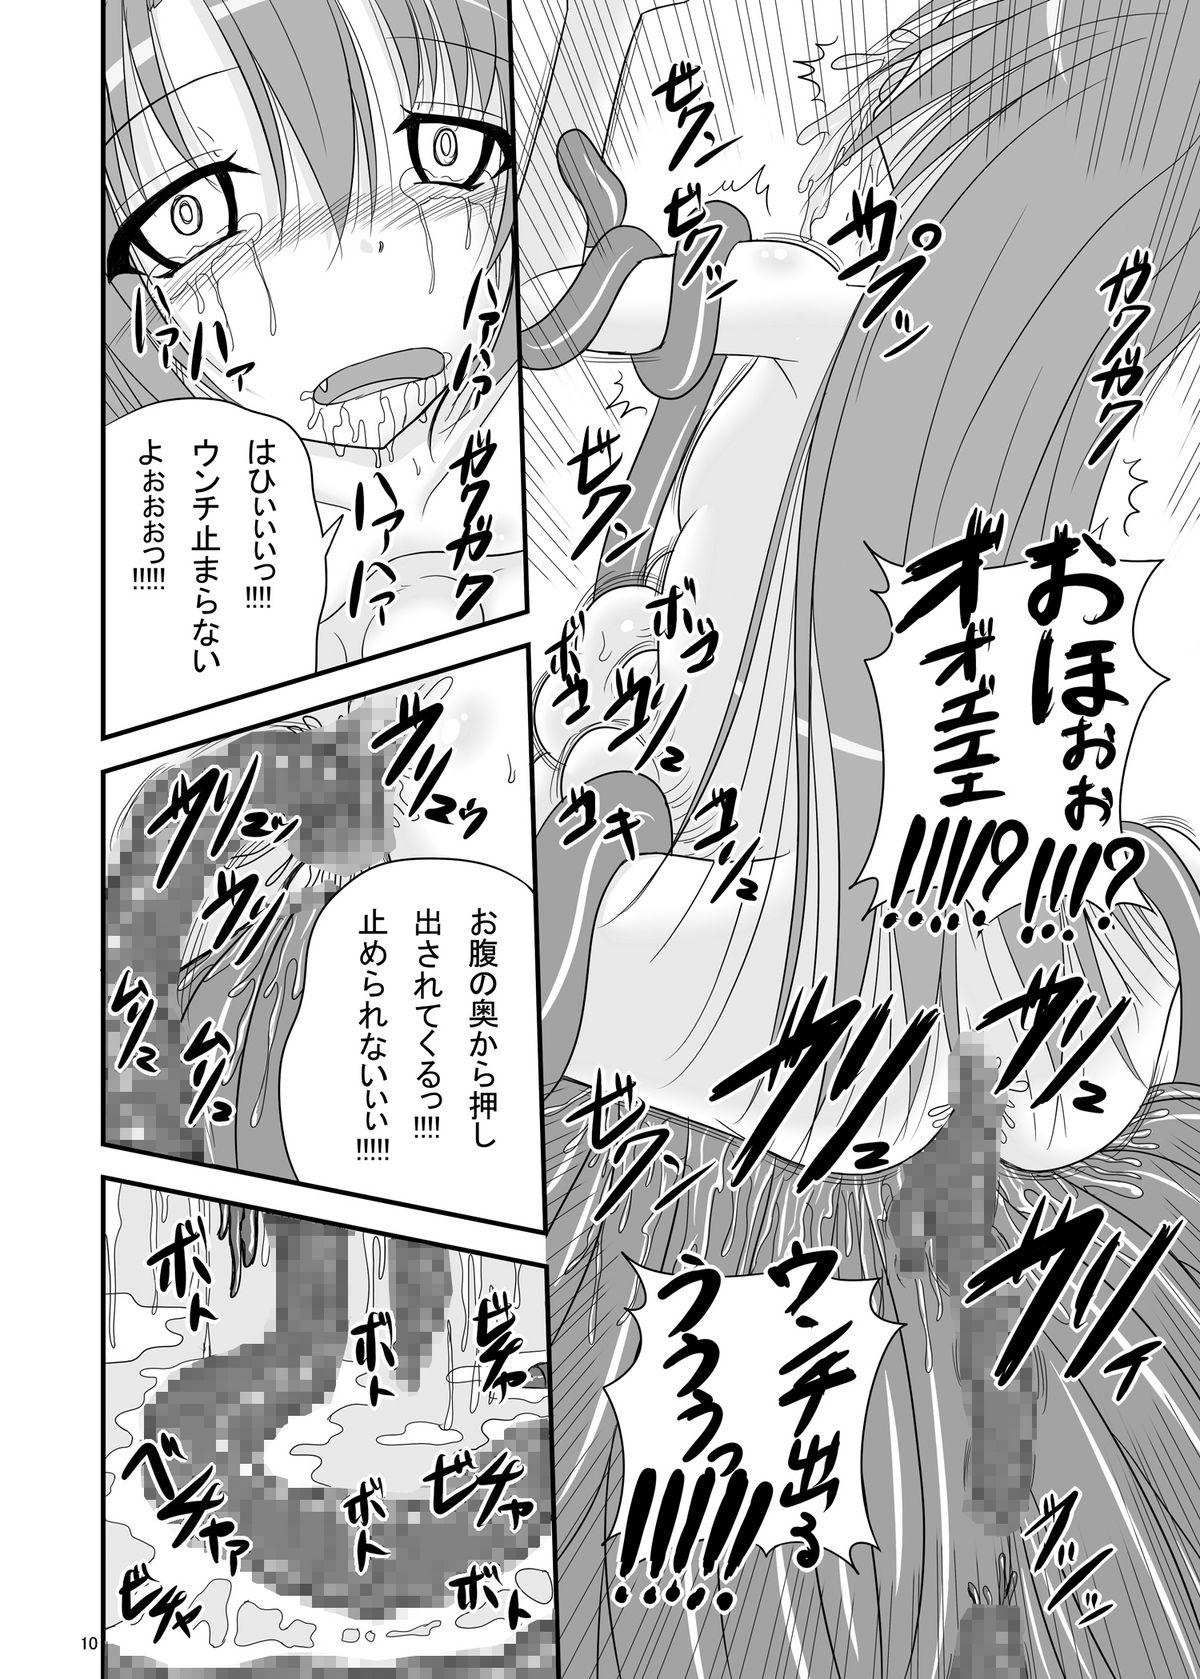 Analfucking Itsuka Zenshin Funsha no Kuso Usagi - Itsuka tenma no kuro usagi Tongue - Page 10